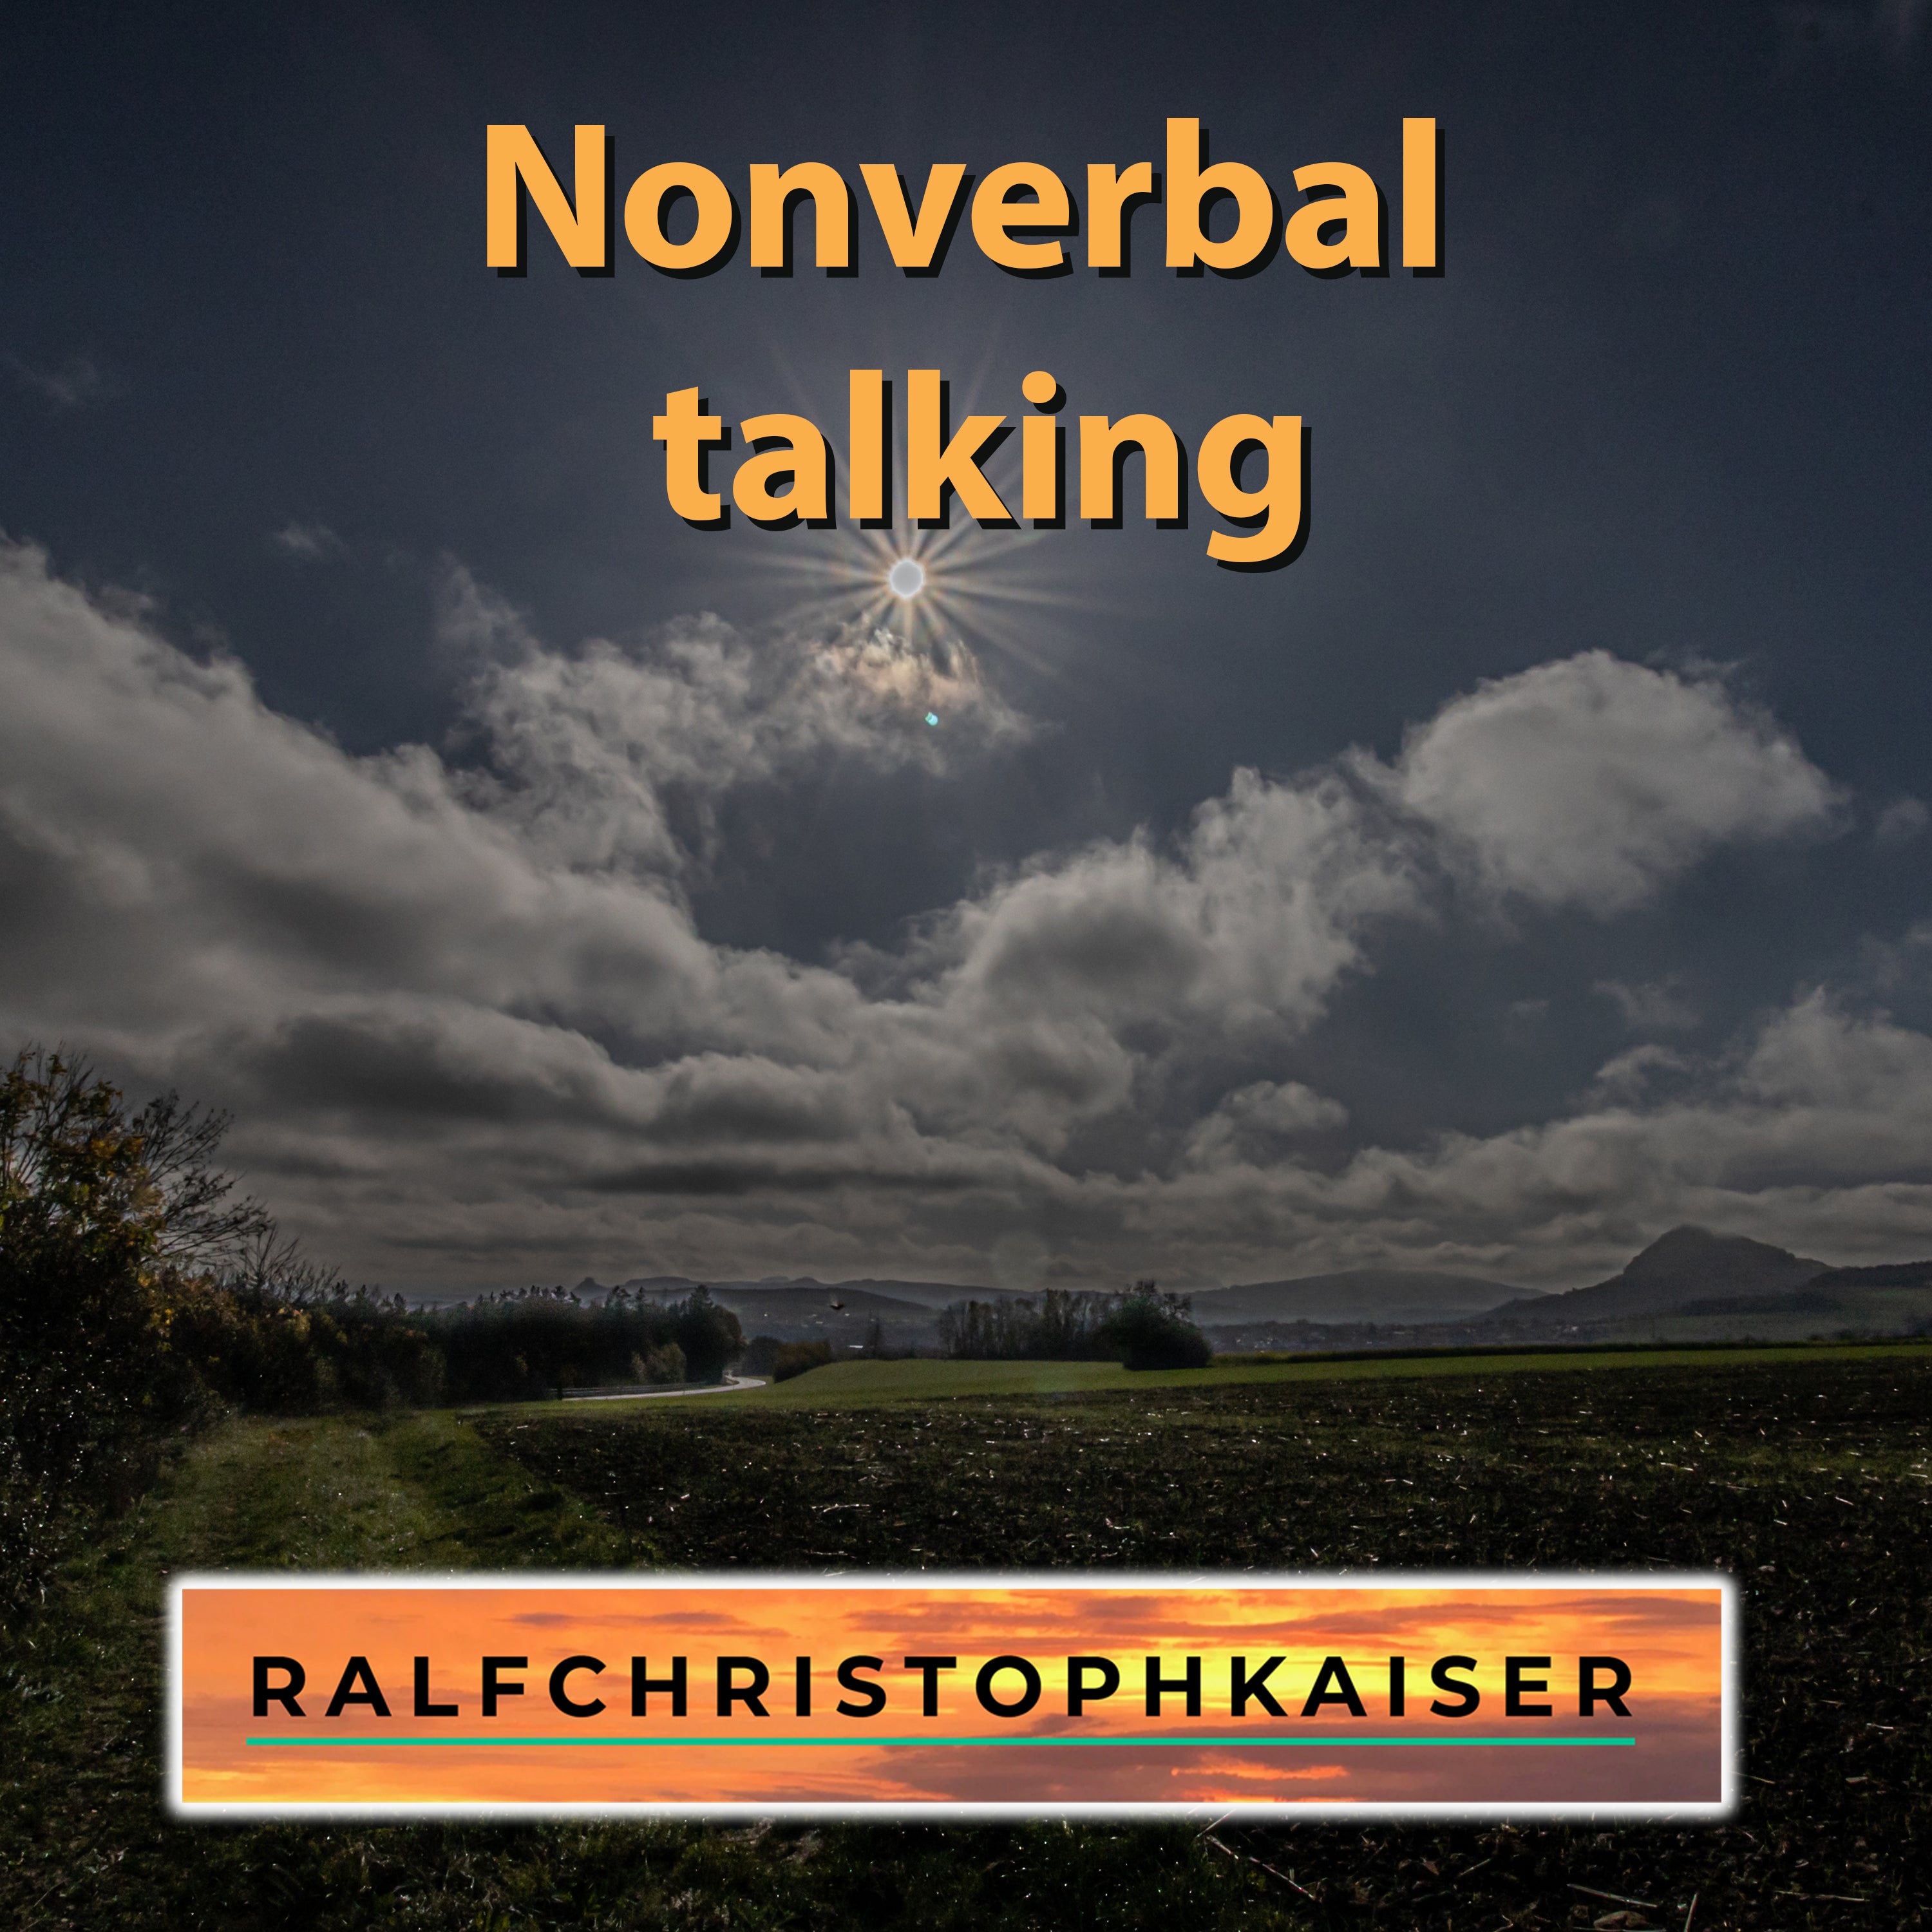 jetzt der Landeanflug mit dem Song: "Nonverbal talking" by Ralf Christoph Kaiser in HD